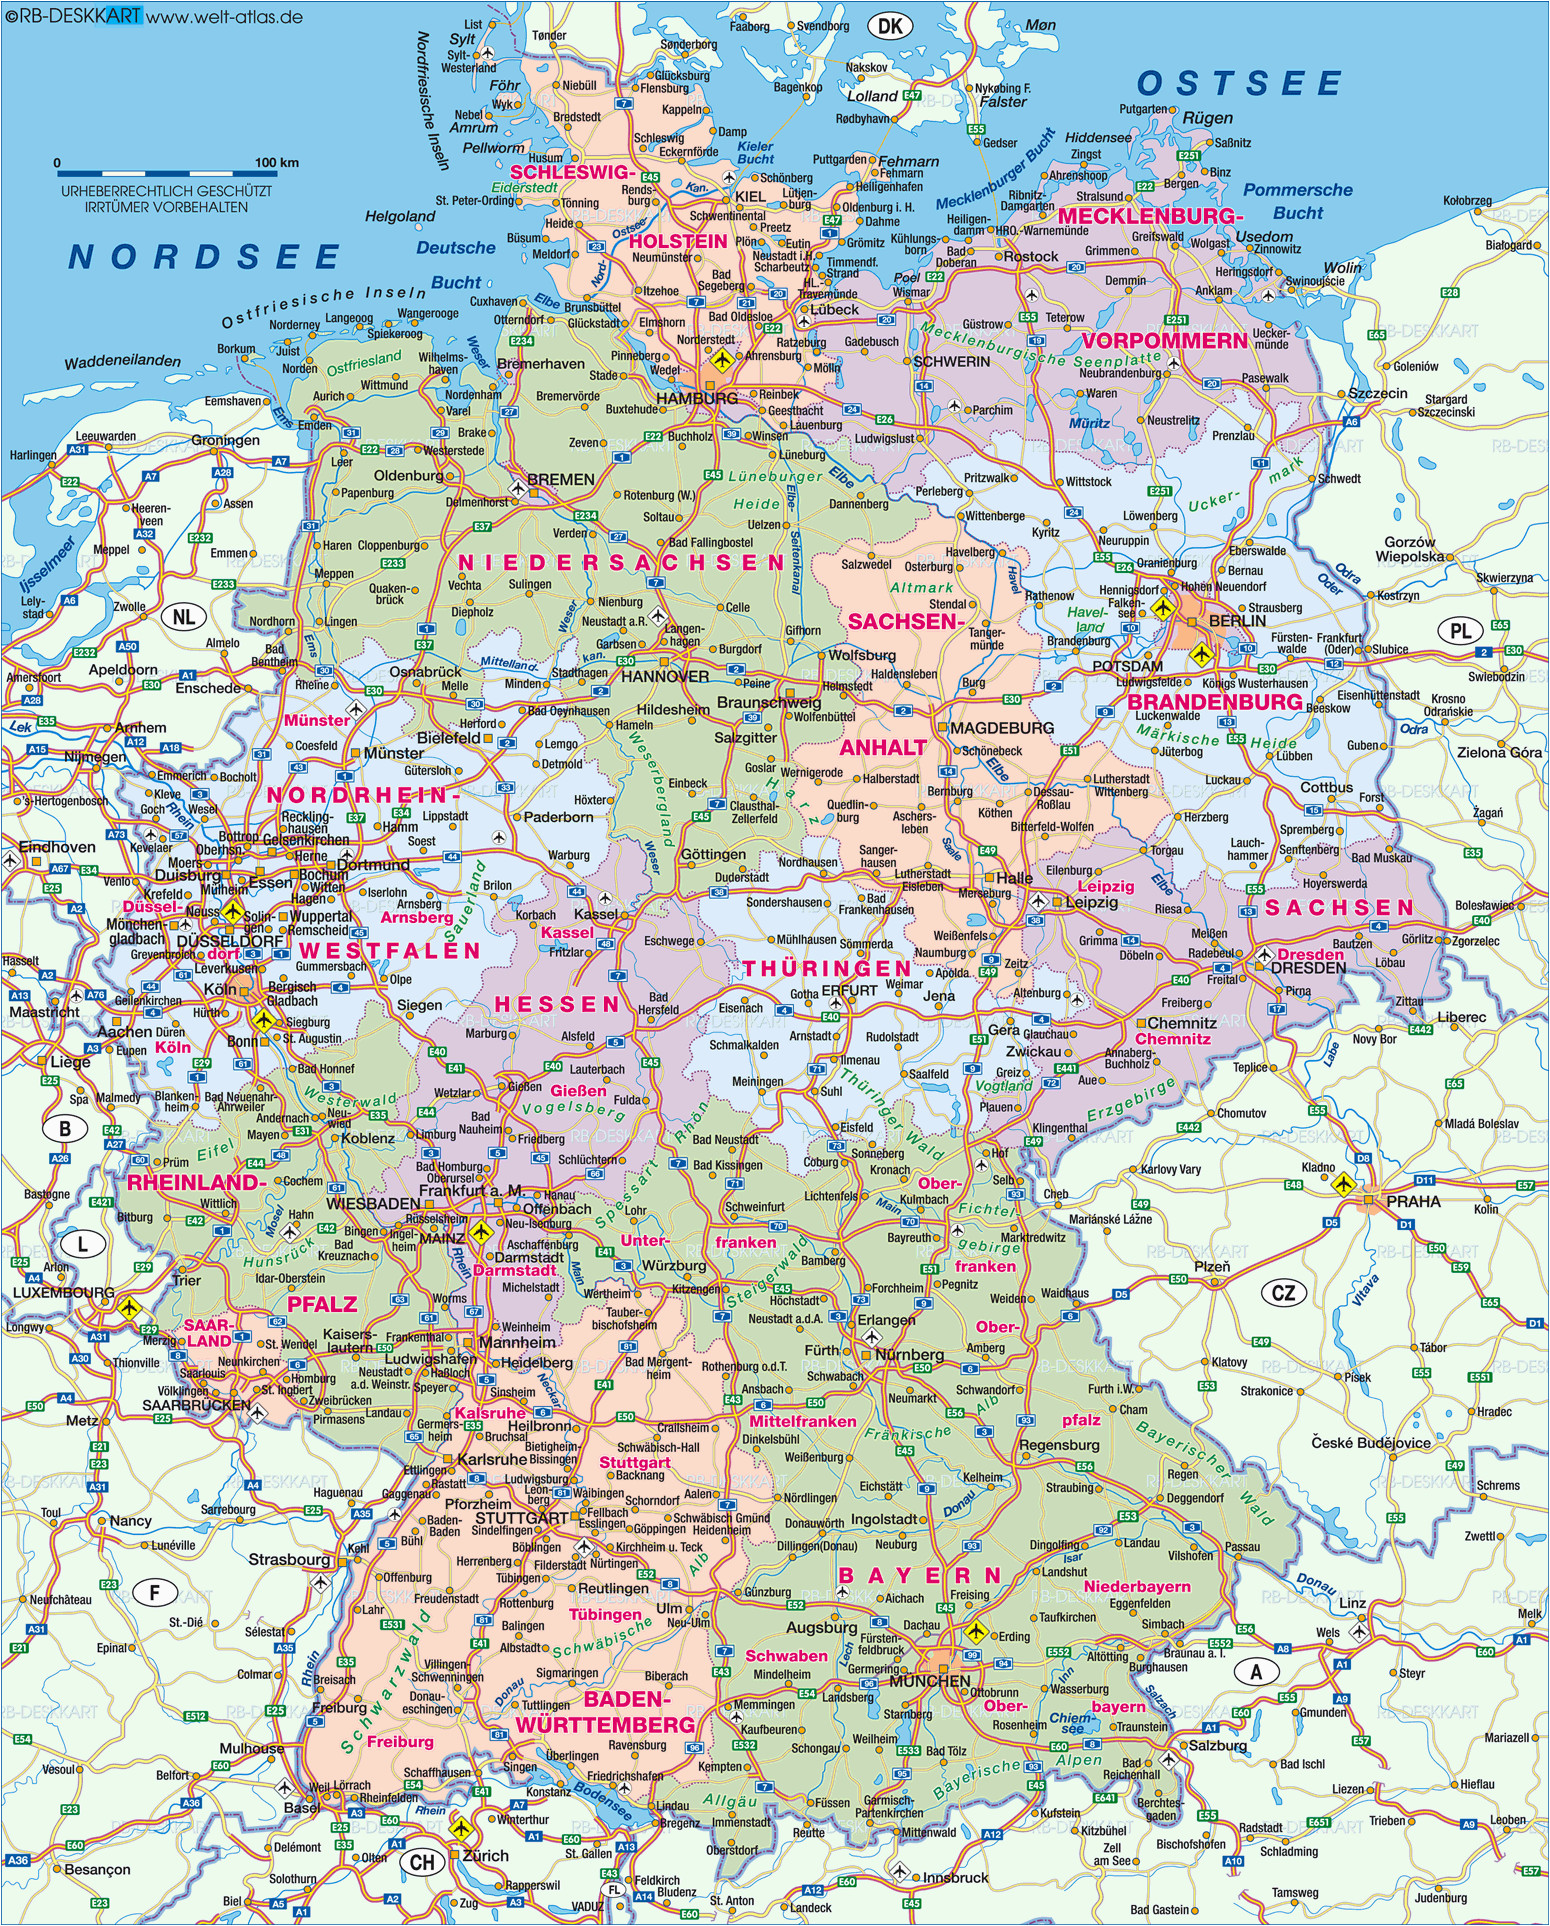 karte von deutschland ancestry karte deutschland landkarte